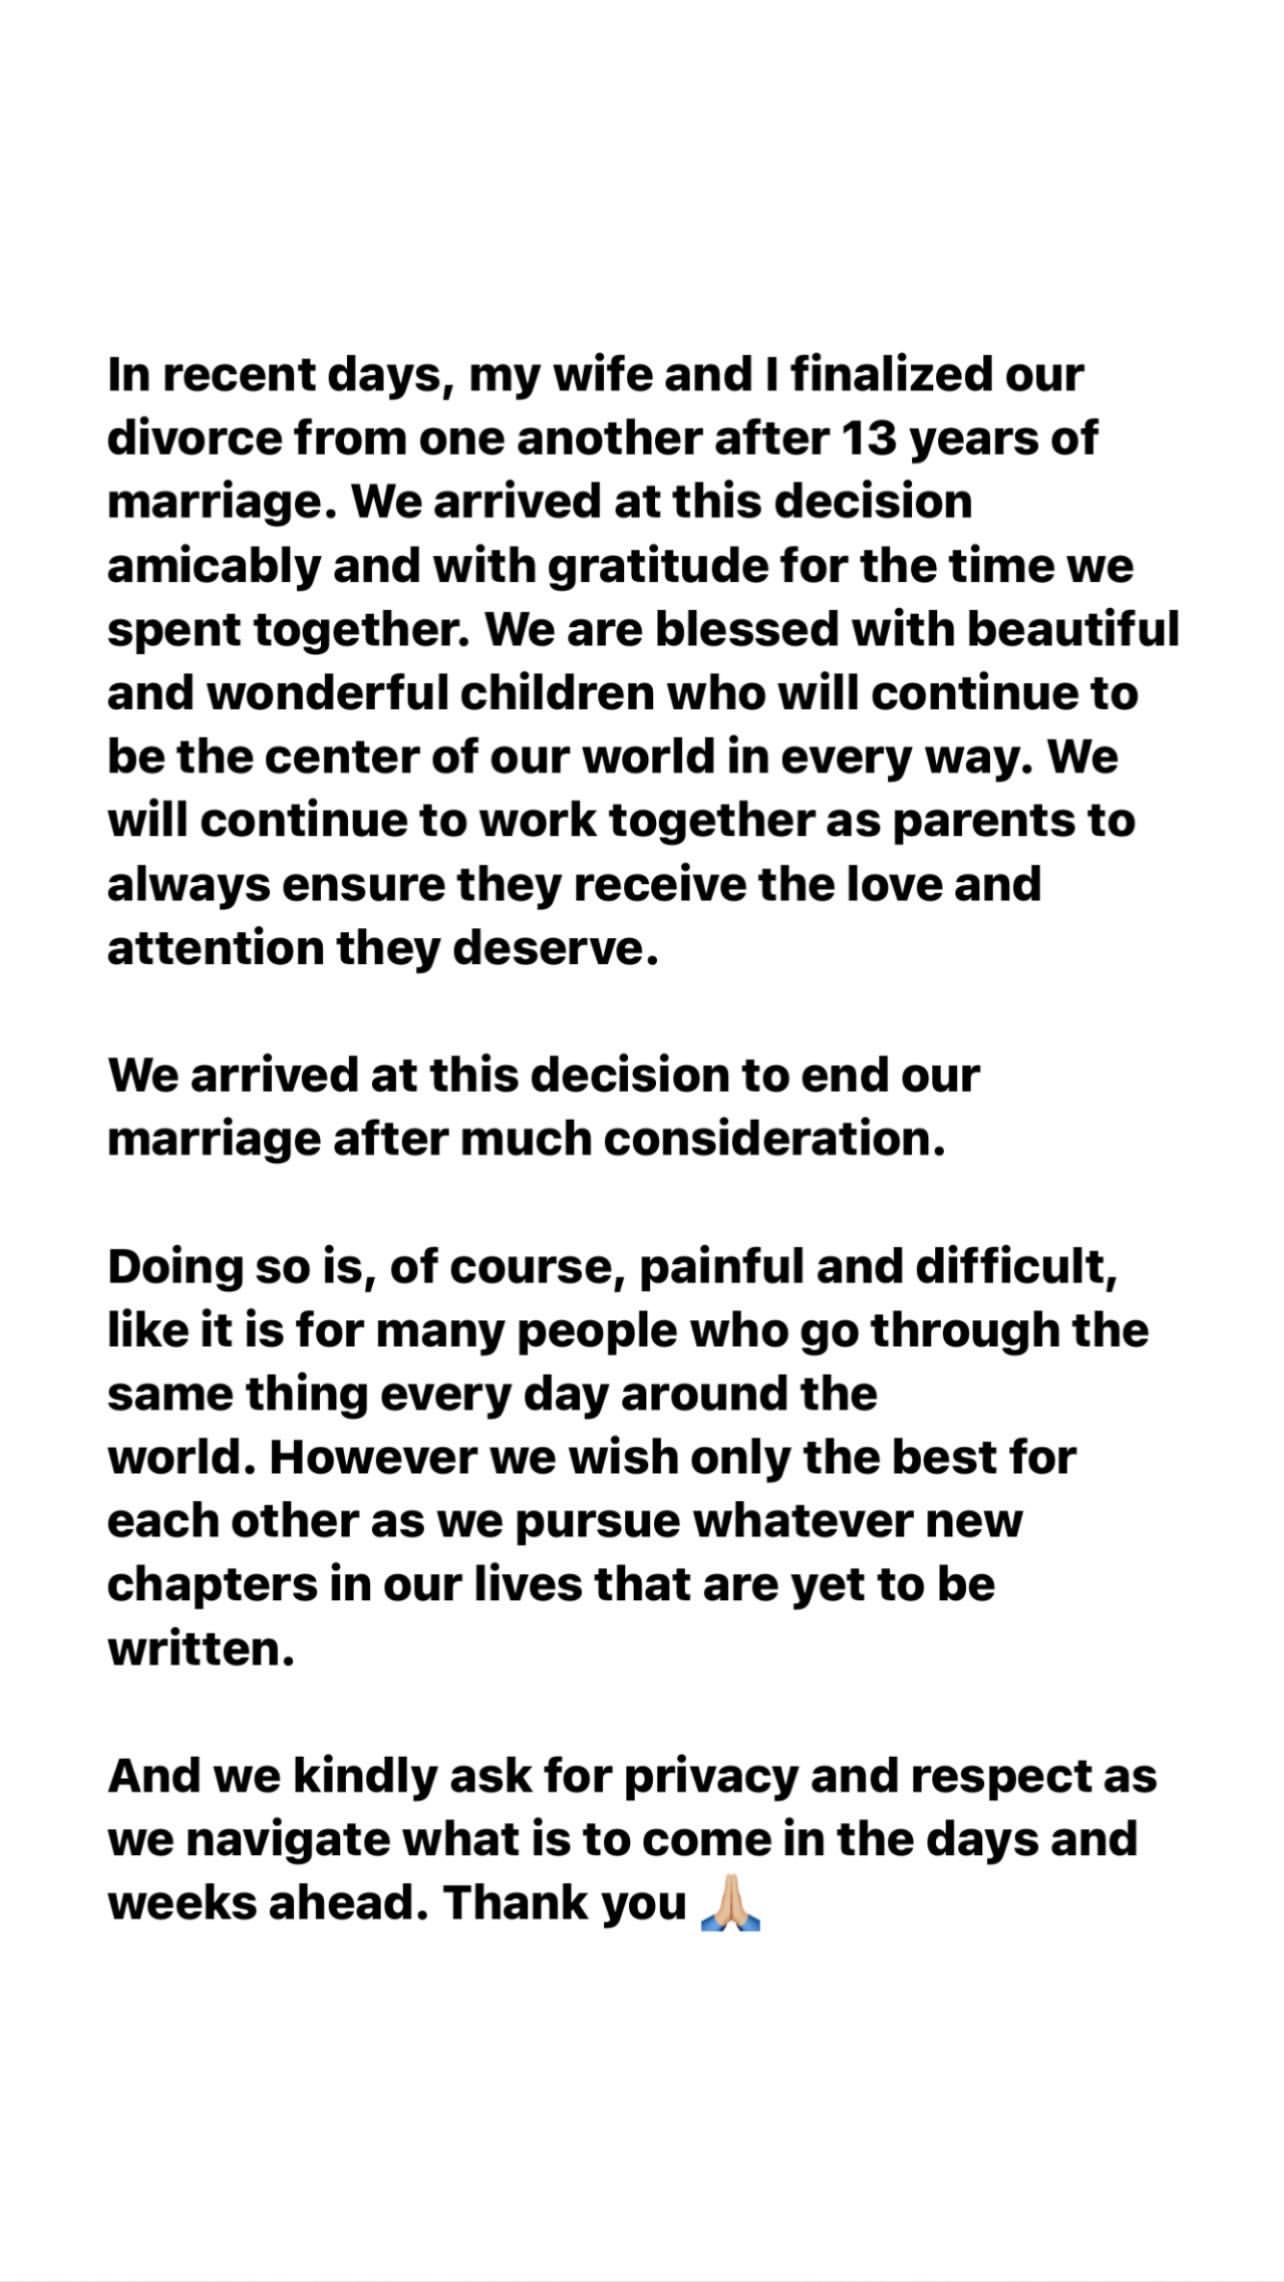 Tom Brady's statement on divorce from Gisele Bündchen.